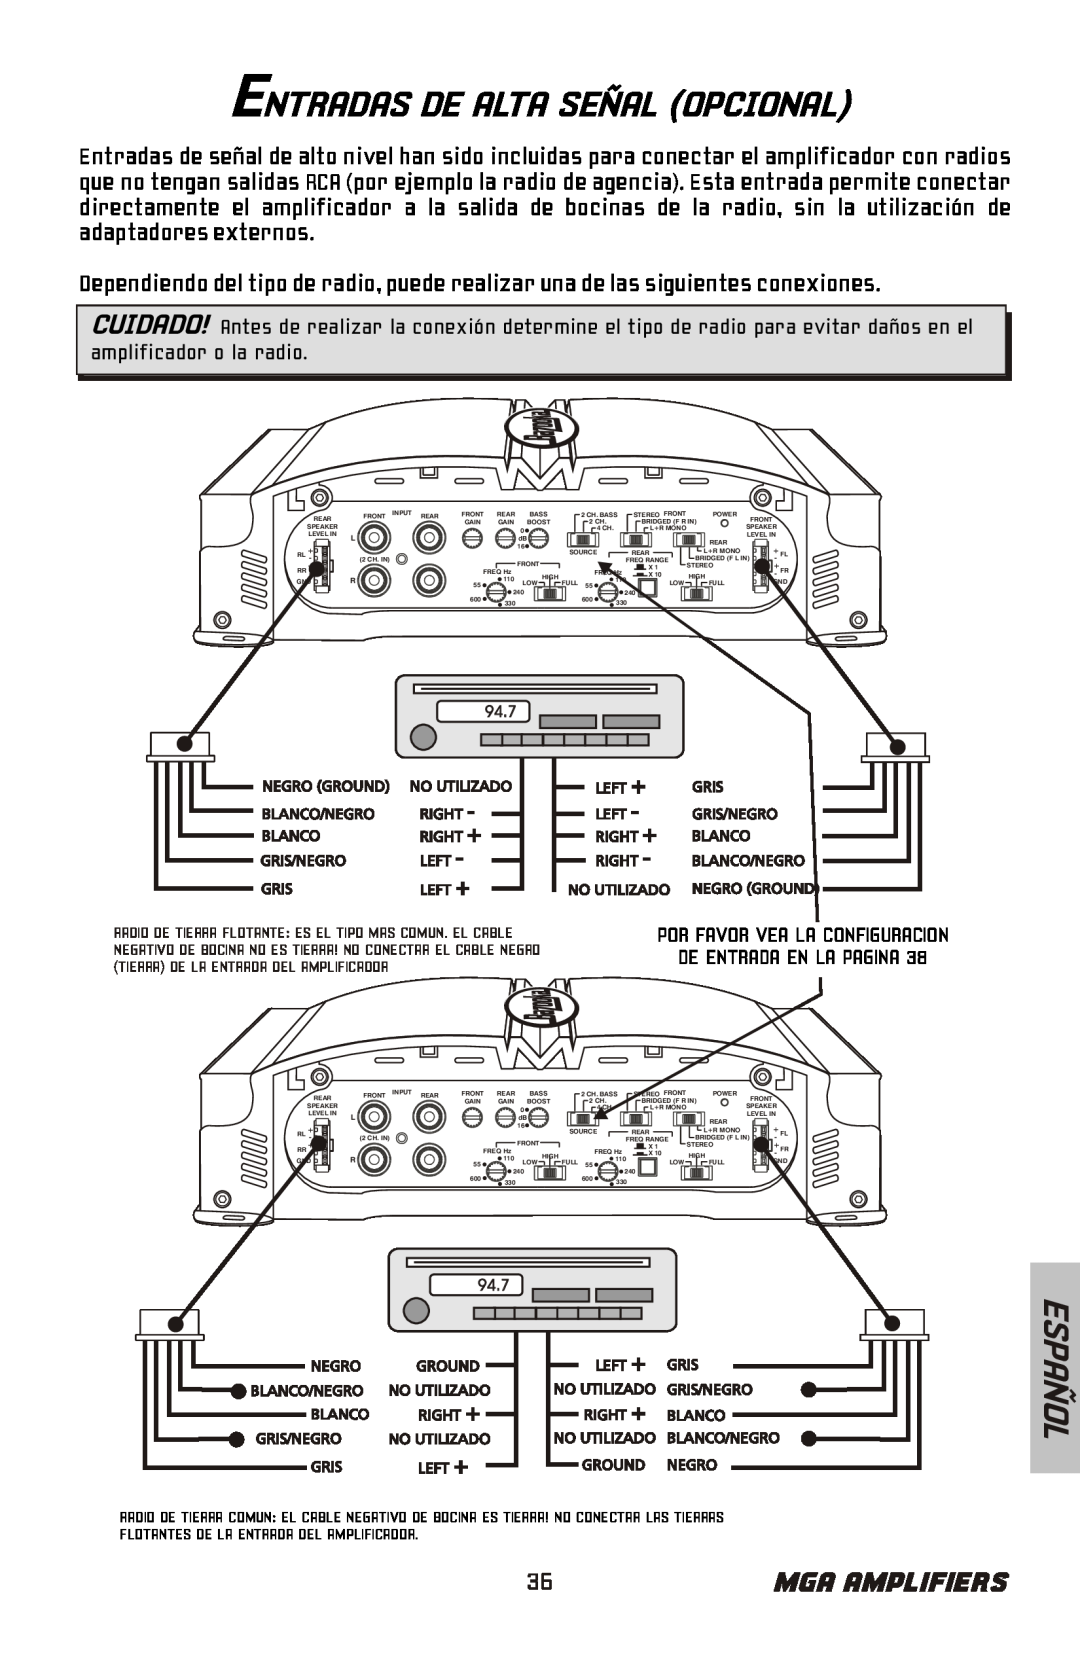 Bazooka MGA4150 manual Entradas De Alta Señal Opcional, Español, Mga Amplifiers, amplificador o la radio 